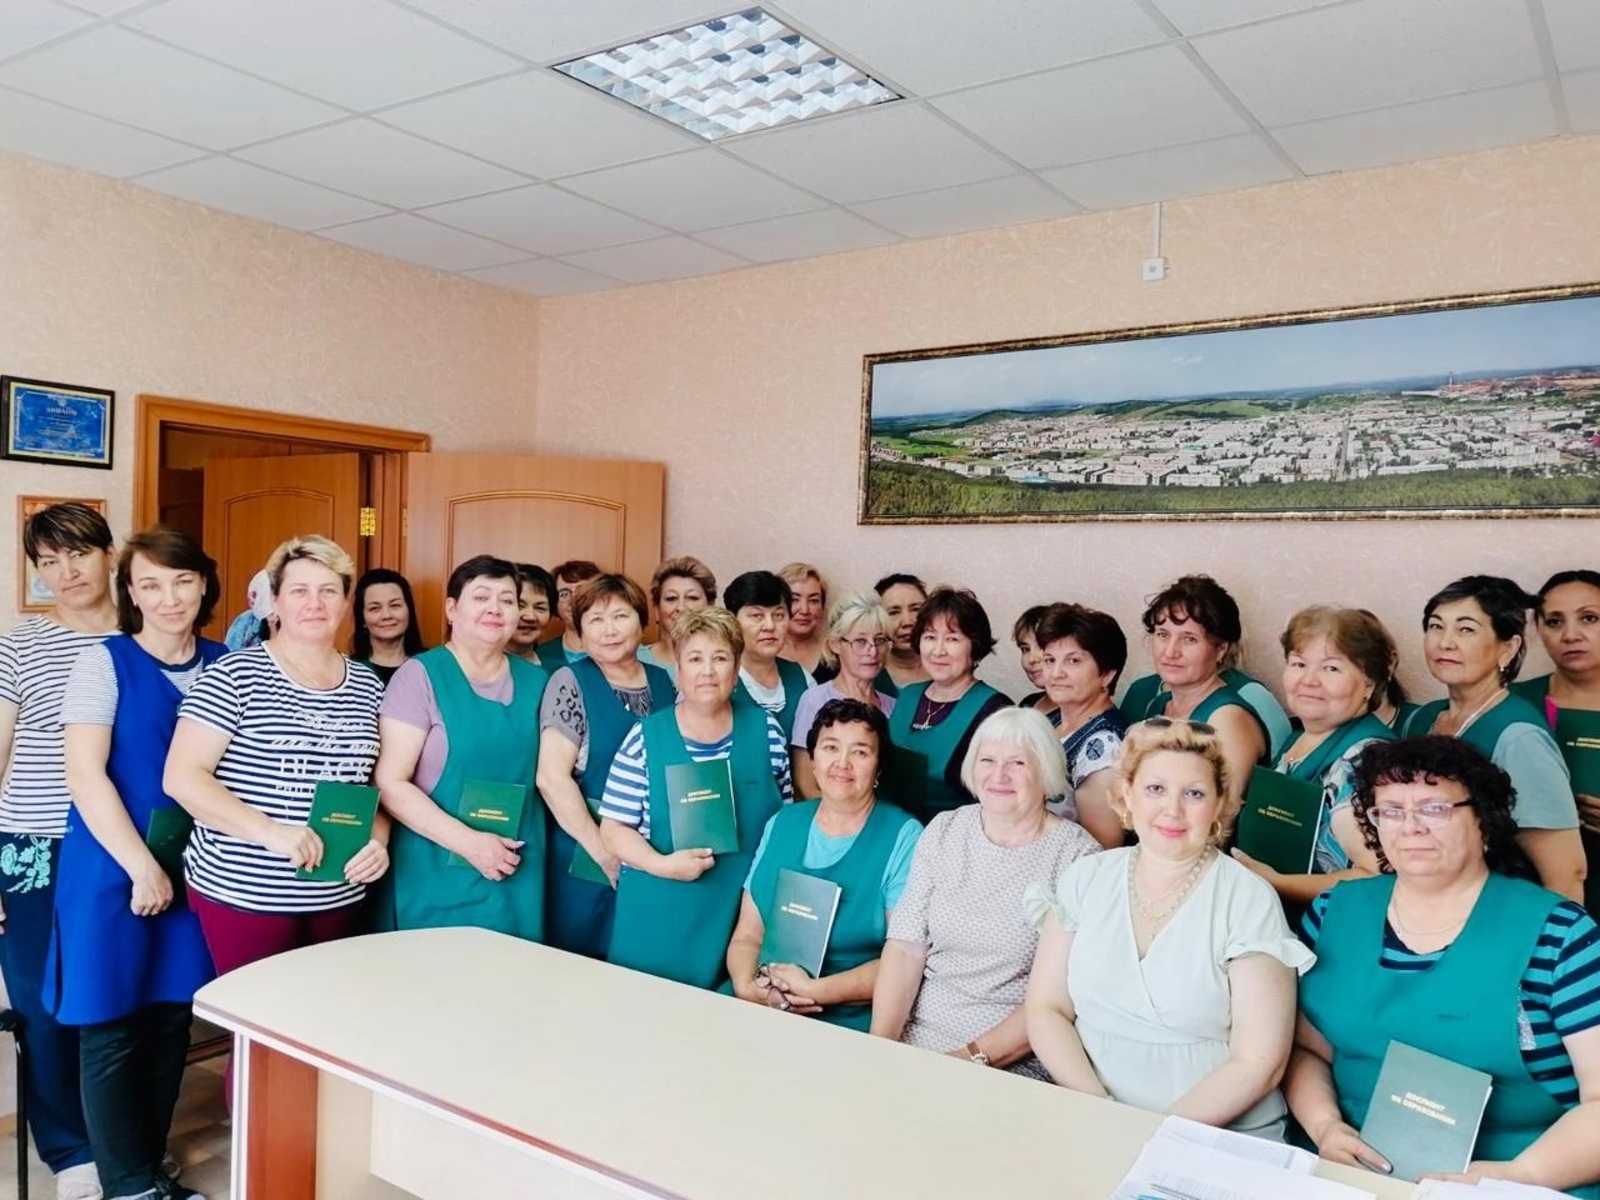 72 работника Учалинской швейной фабрики прошли профессиональную переподготовку по программе оператора швейного оборудования со знанием цифрового оборудования